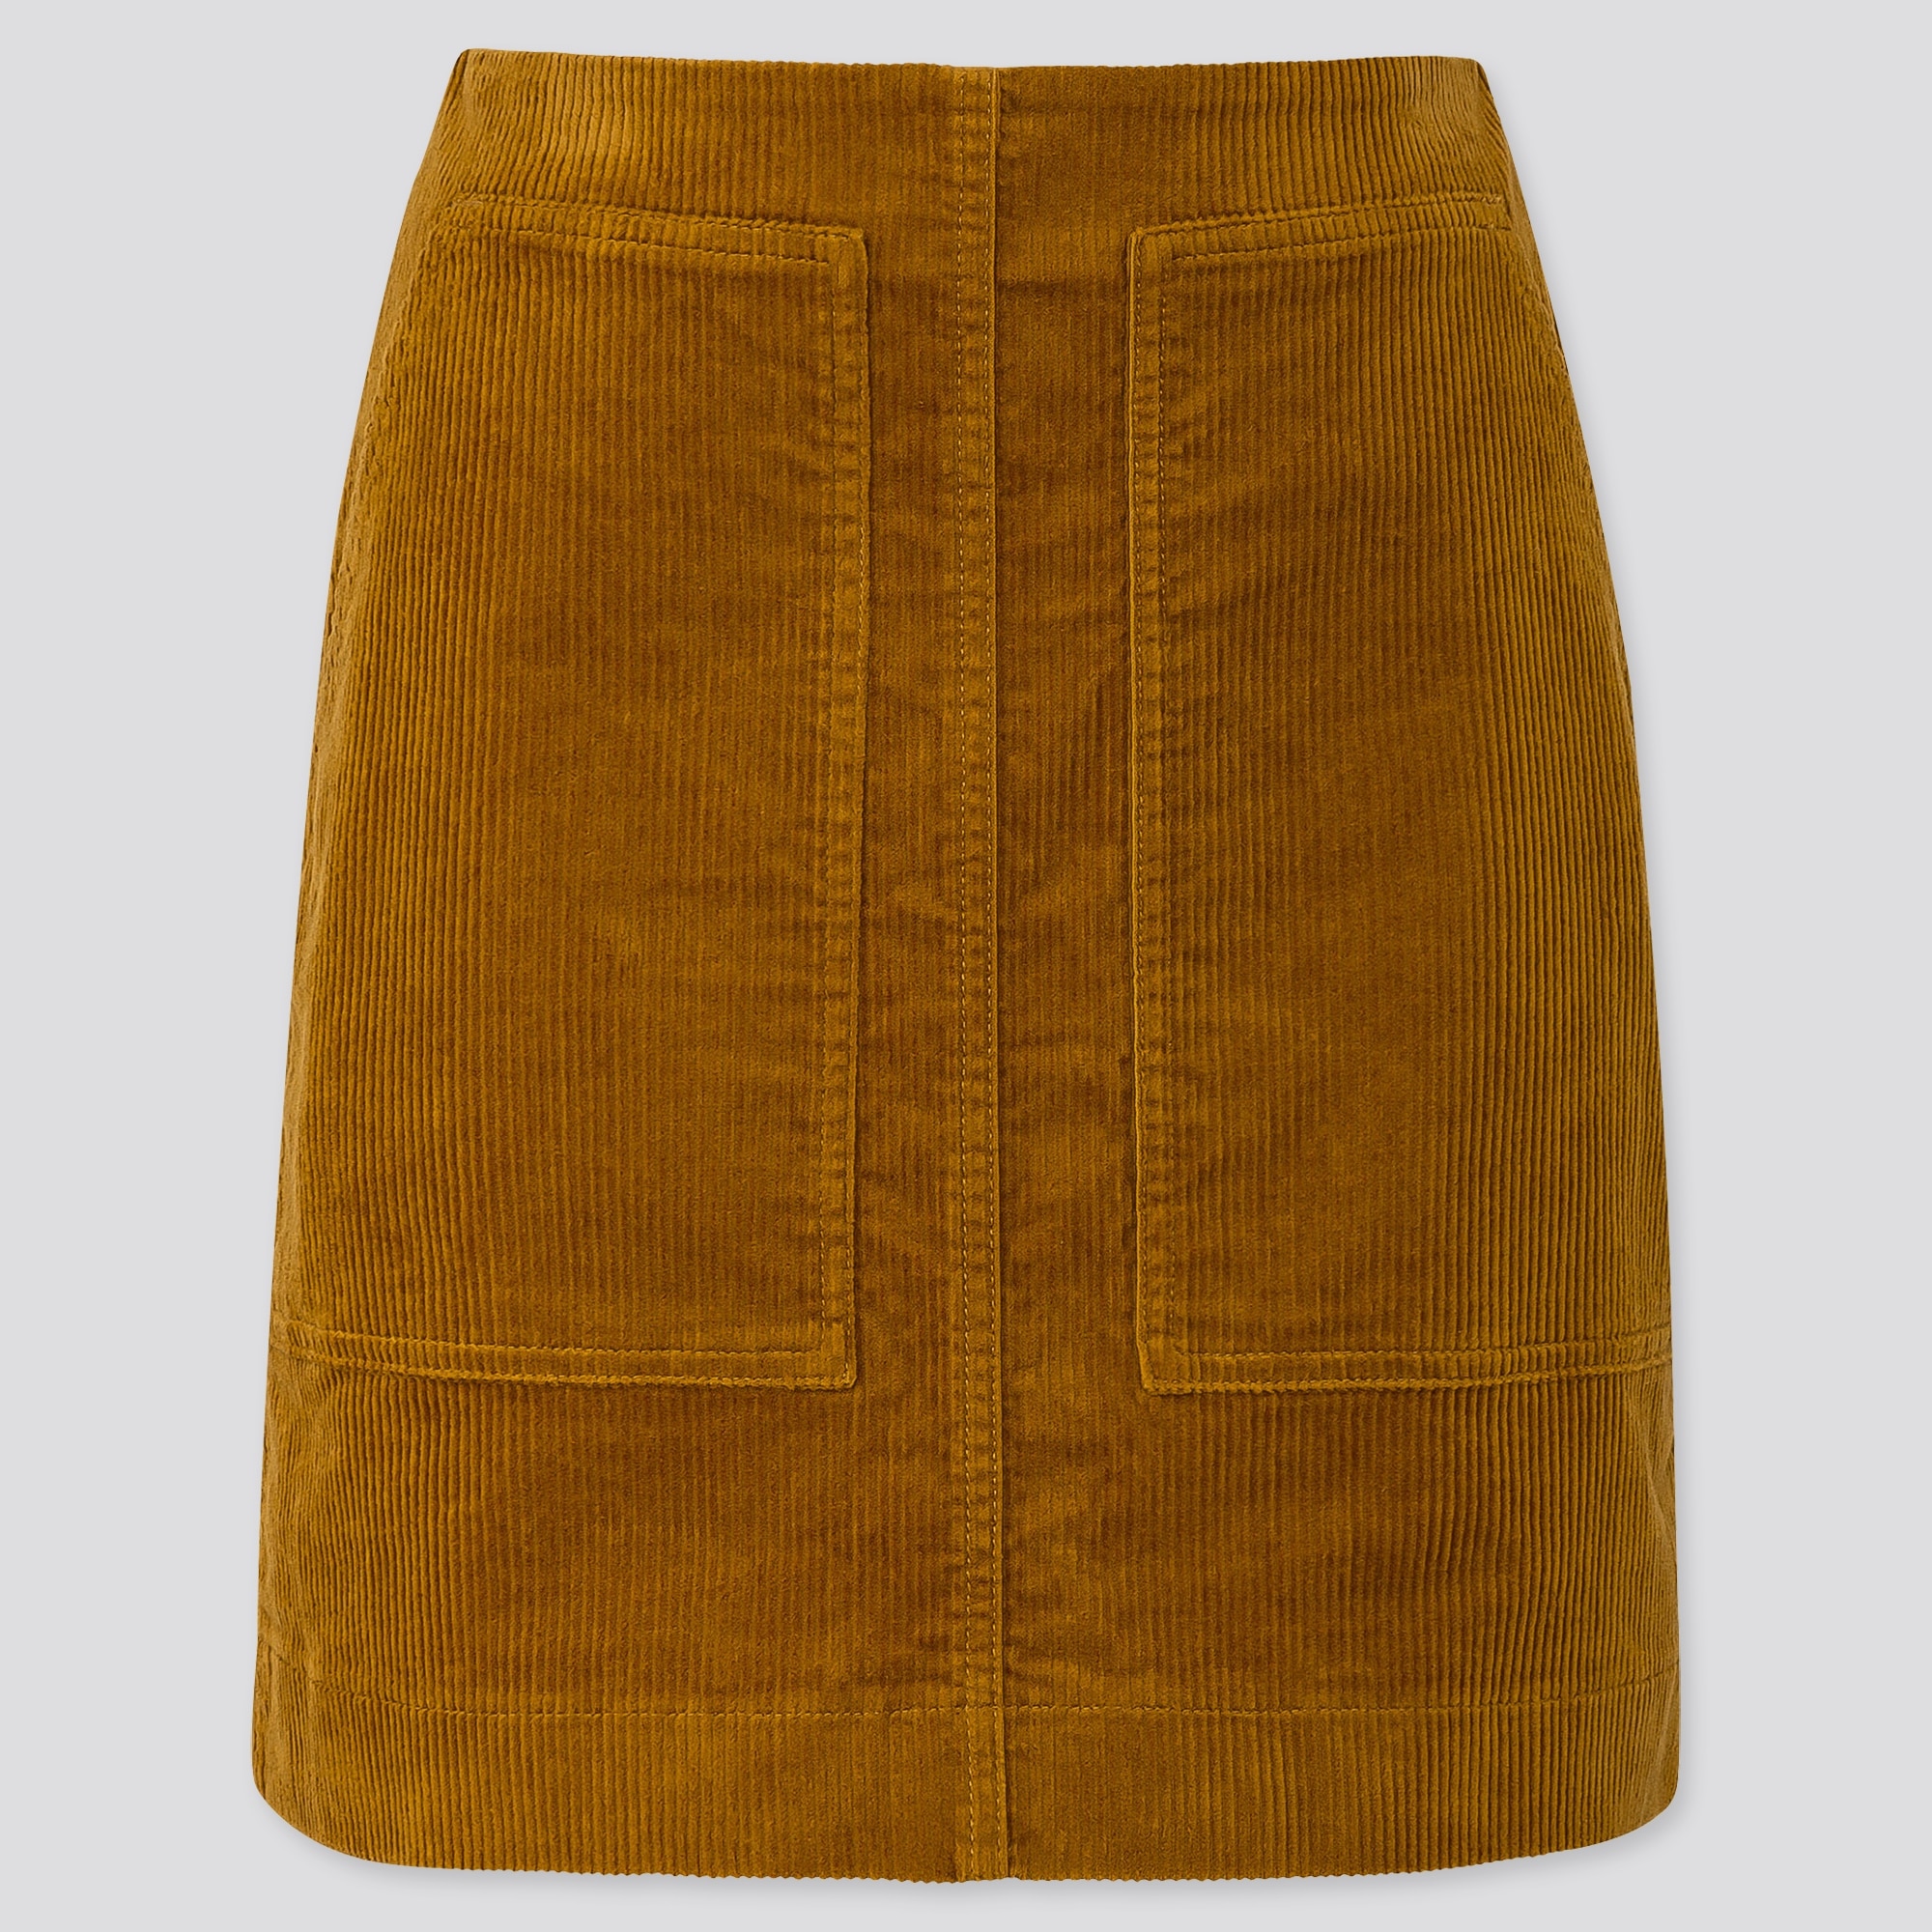 womens yellow skirt